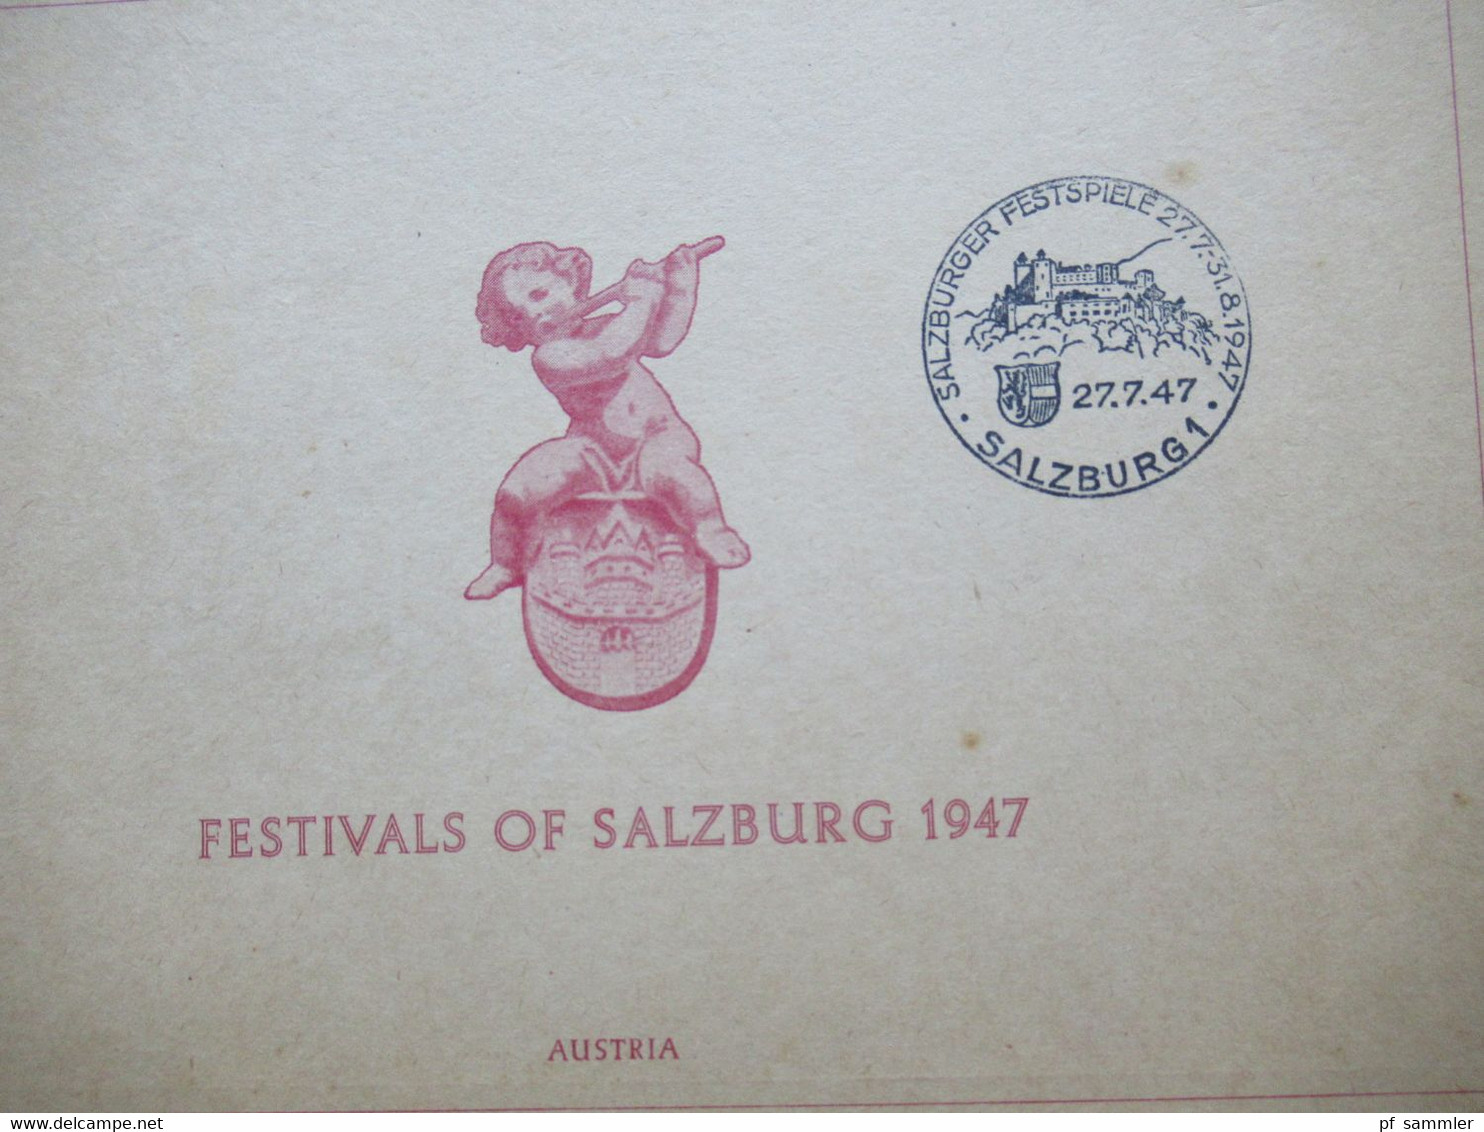 Österreich 1947 Salzburger Festspiele Nr. 801 und 802 Sonderblatt Faltblatt Sonderstempel Salzburg 1